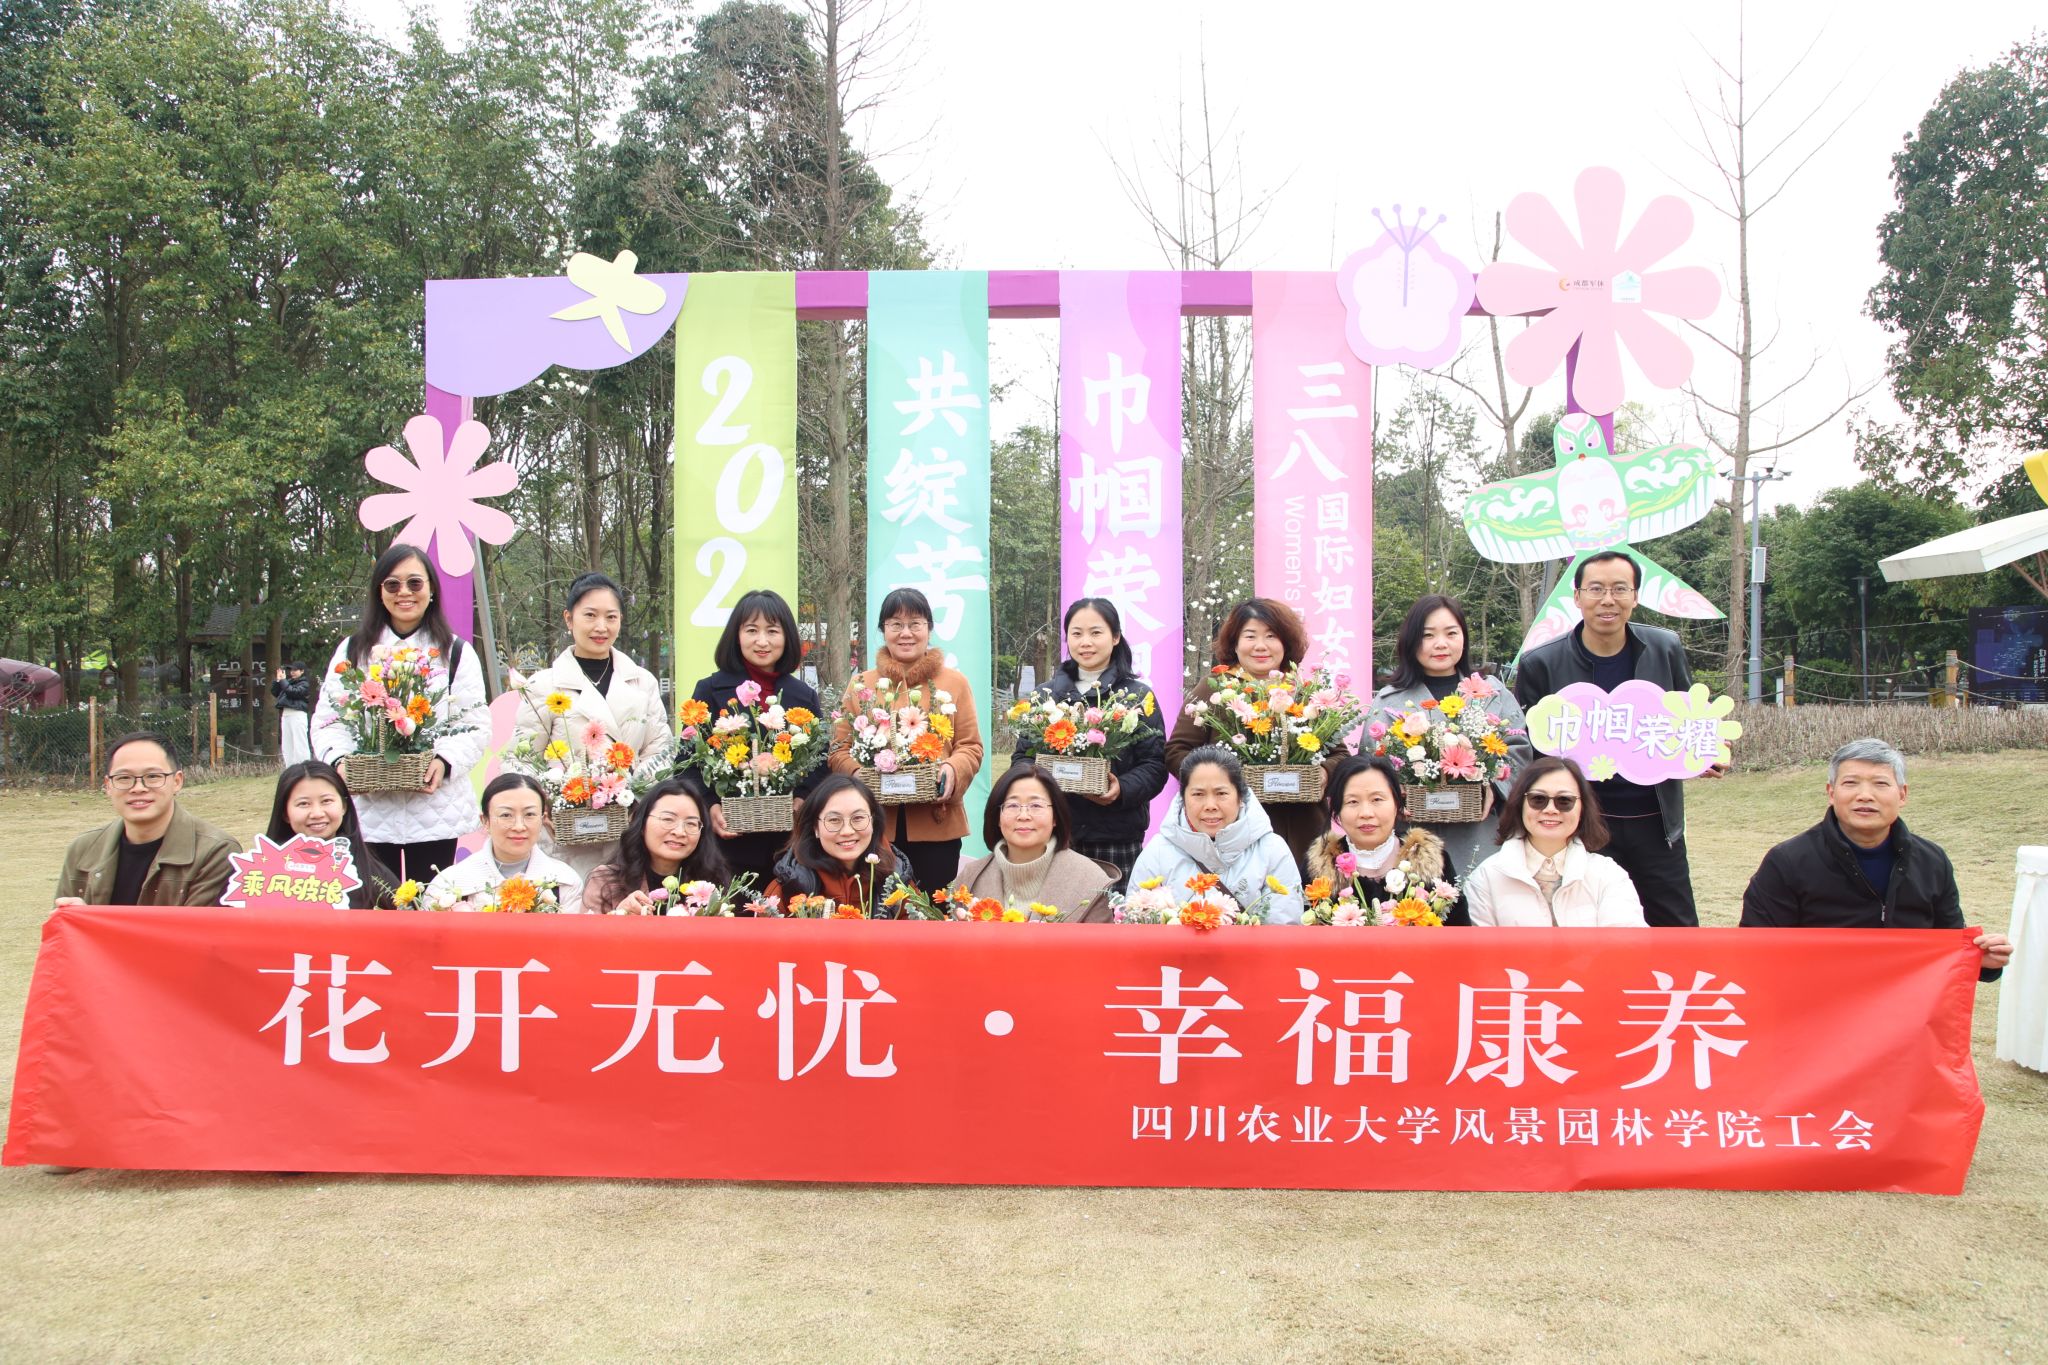 风景园林学院工会与成都市军休中心 联合开展“巾帼荣耀·共绽芳华” 妇女节主题活动